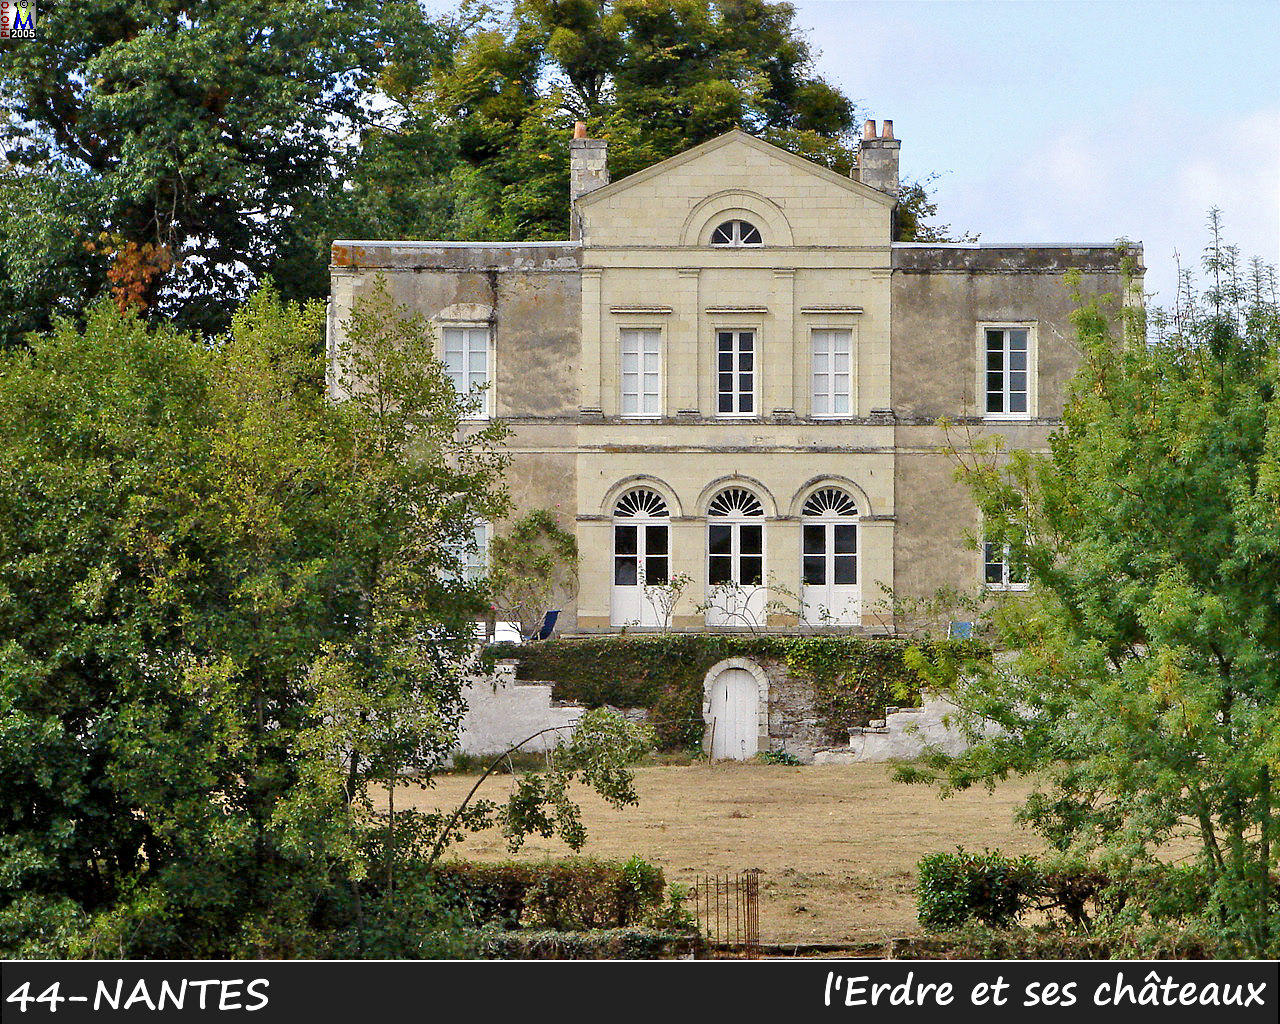 44NANTES_erdre-chateau_122.jpg